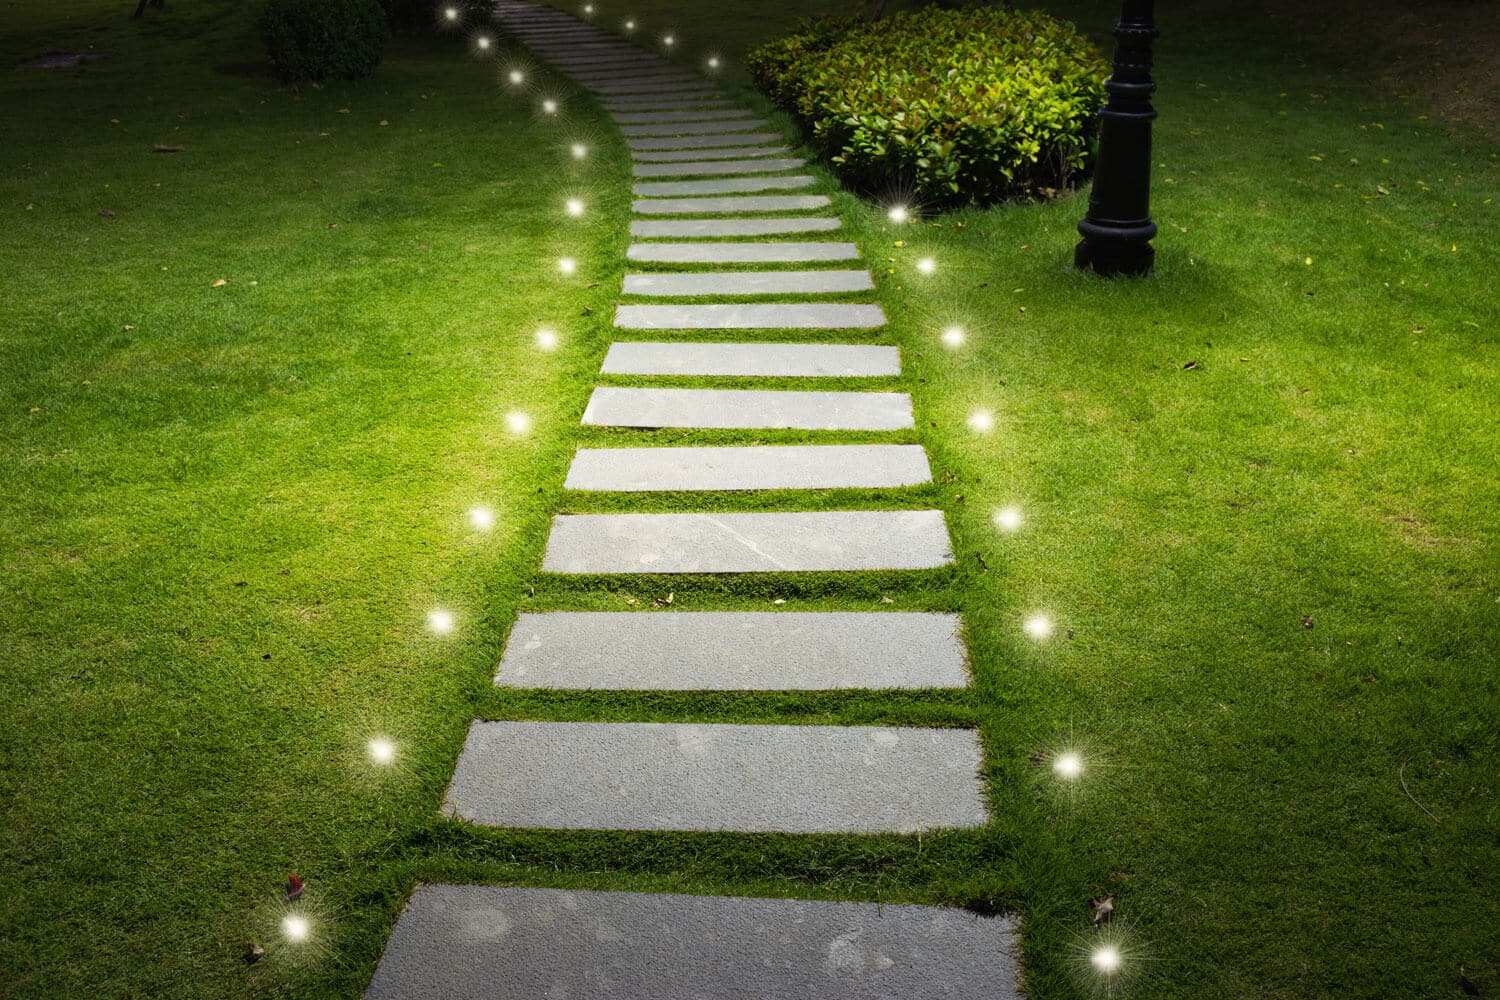 EZ YARD DOT - Outdoor LED Lights for Landscape or Hardscape Edges